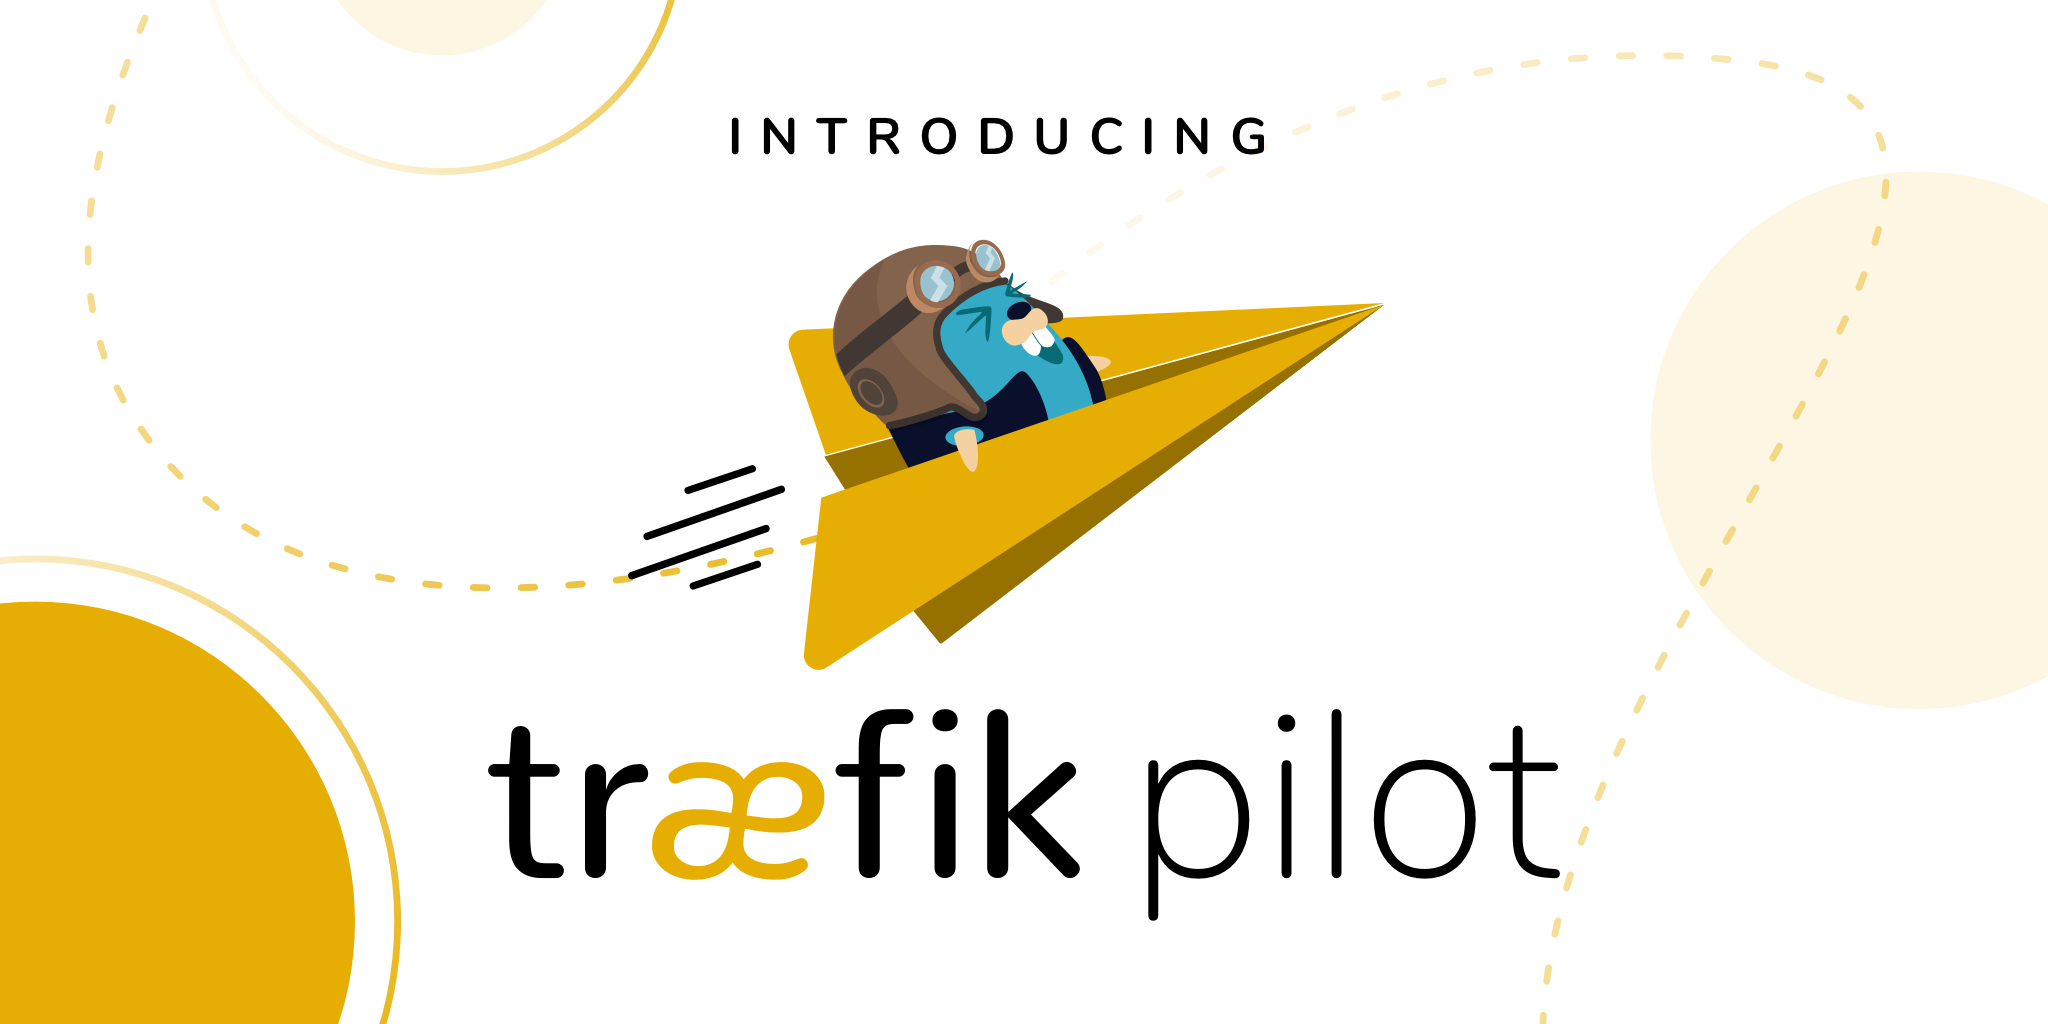 Announcing Traefik Pilot!